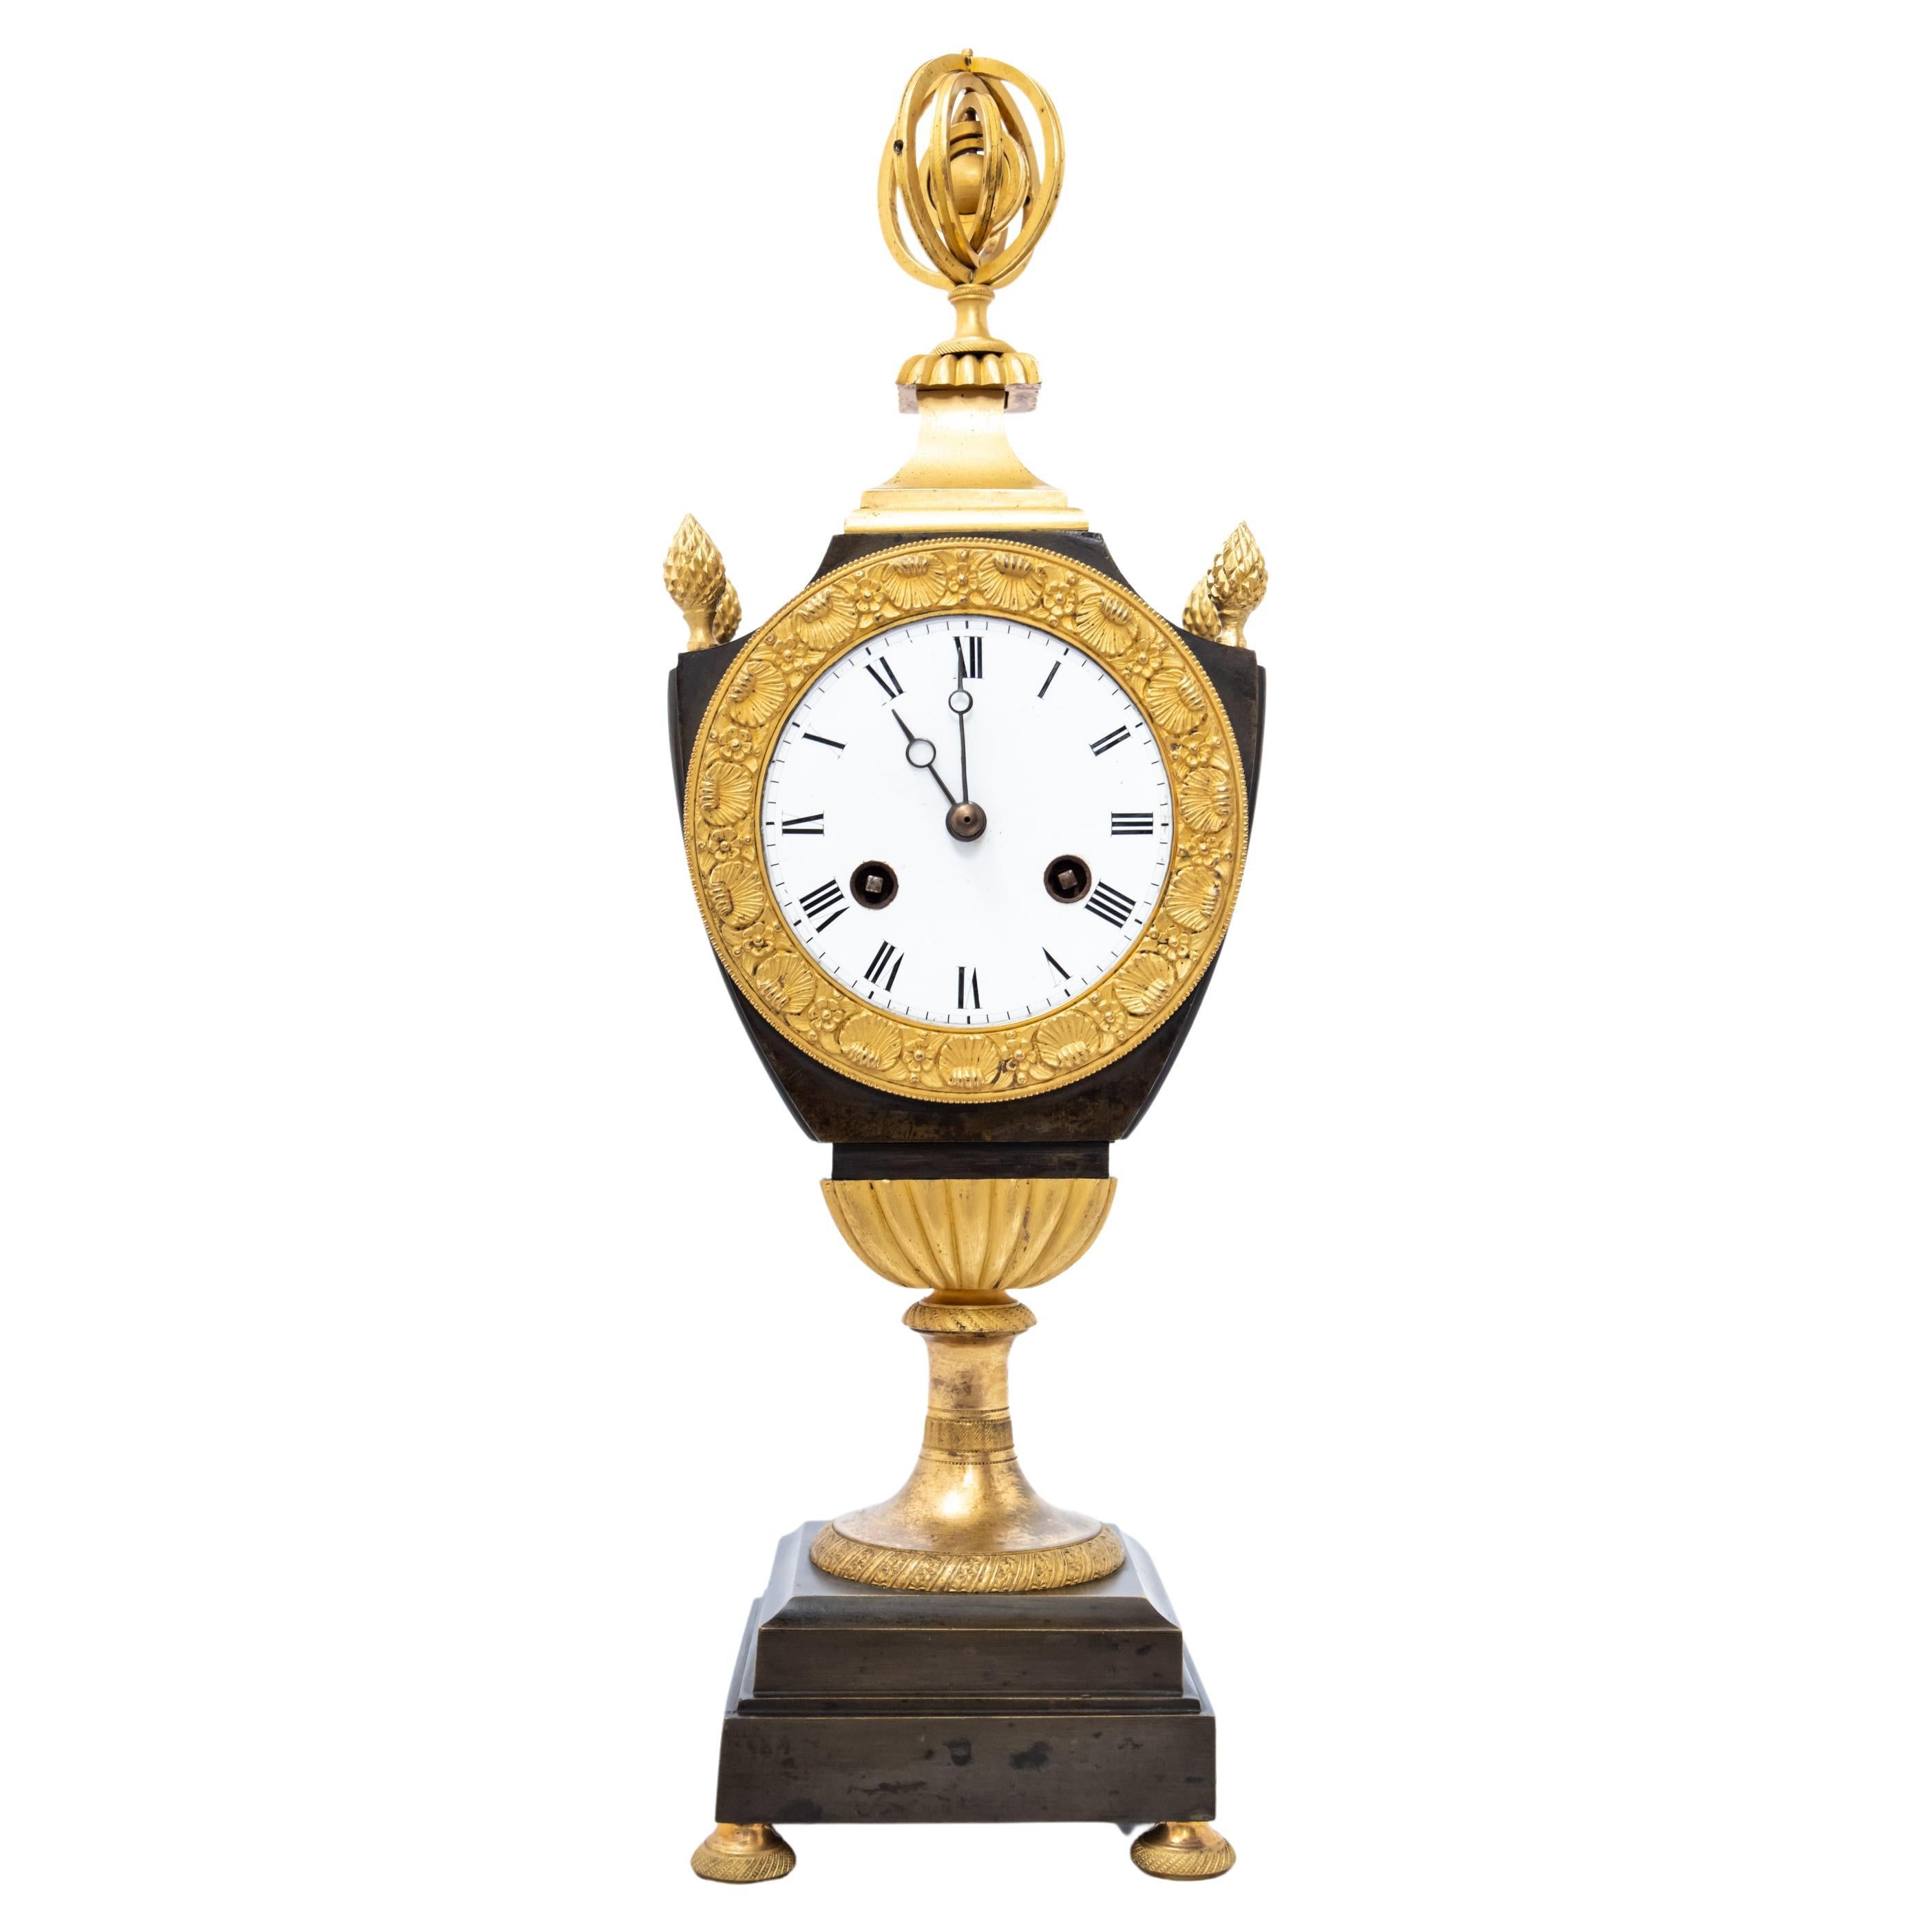 Horloge patinée et dorée au feu en forme de vase vers 1800